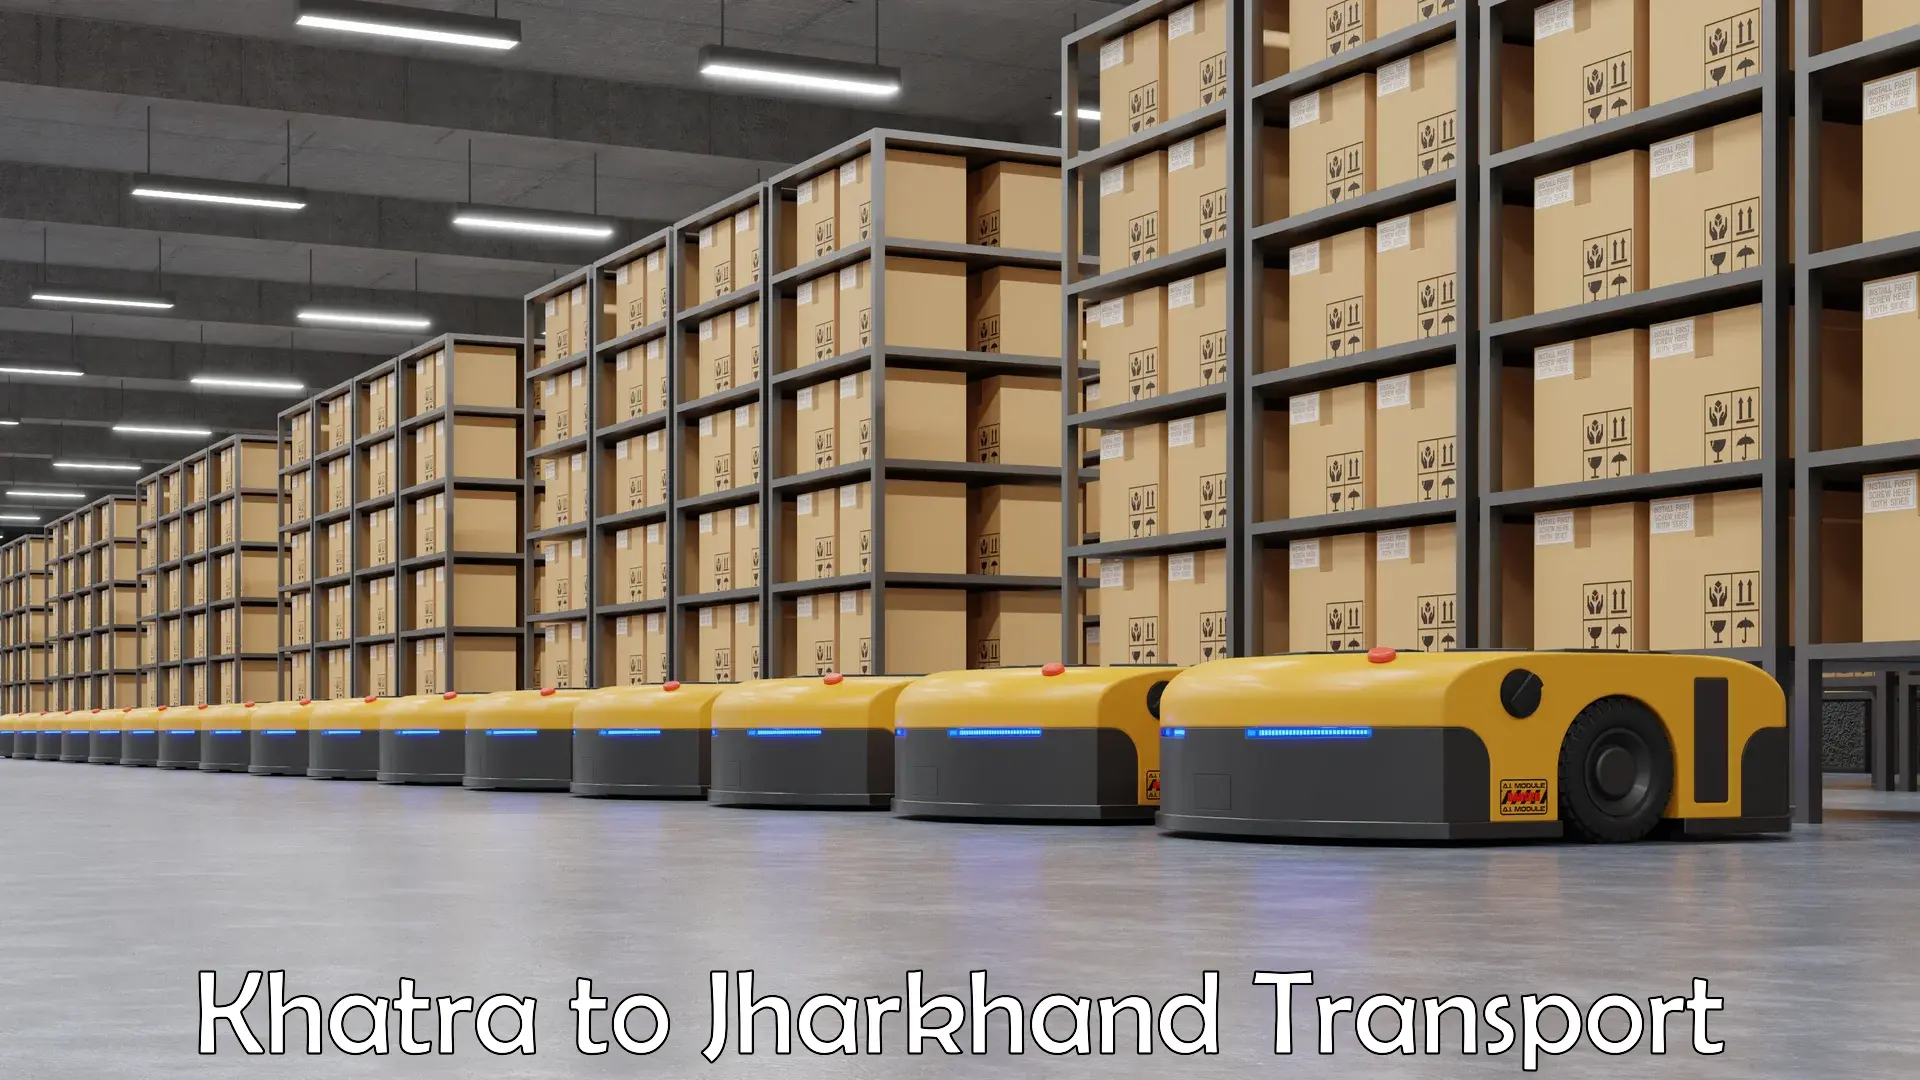 Container transport service Khatra to Medininagar